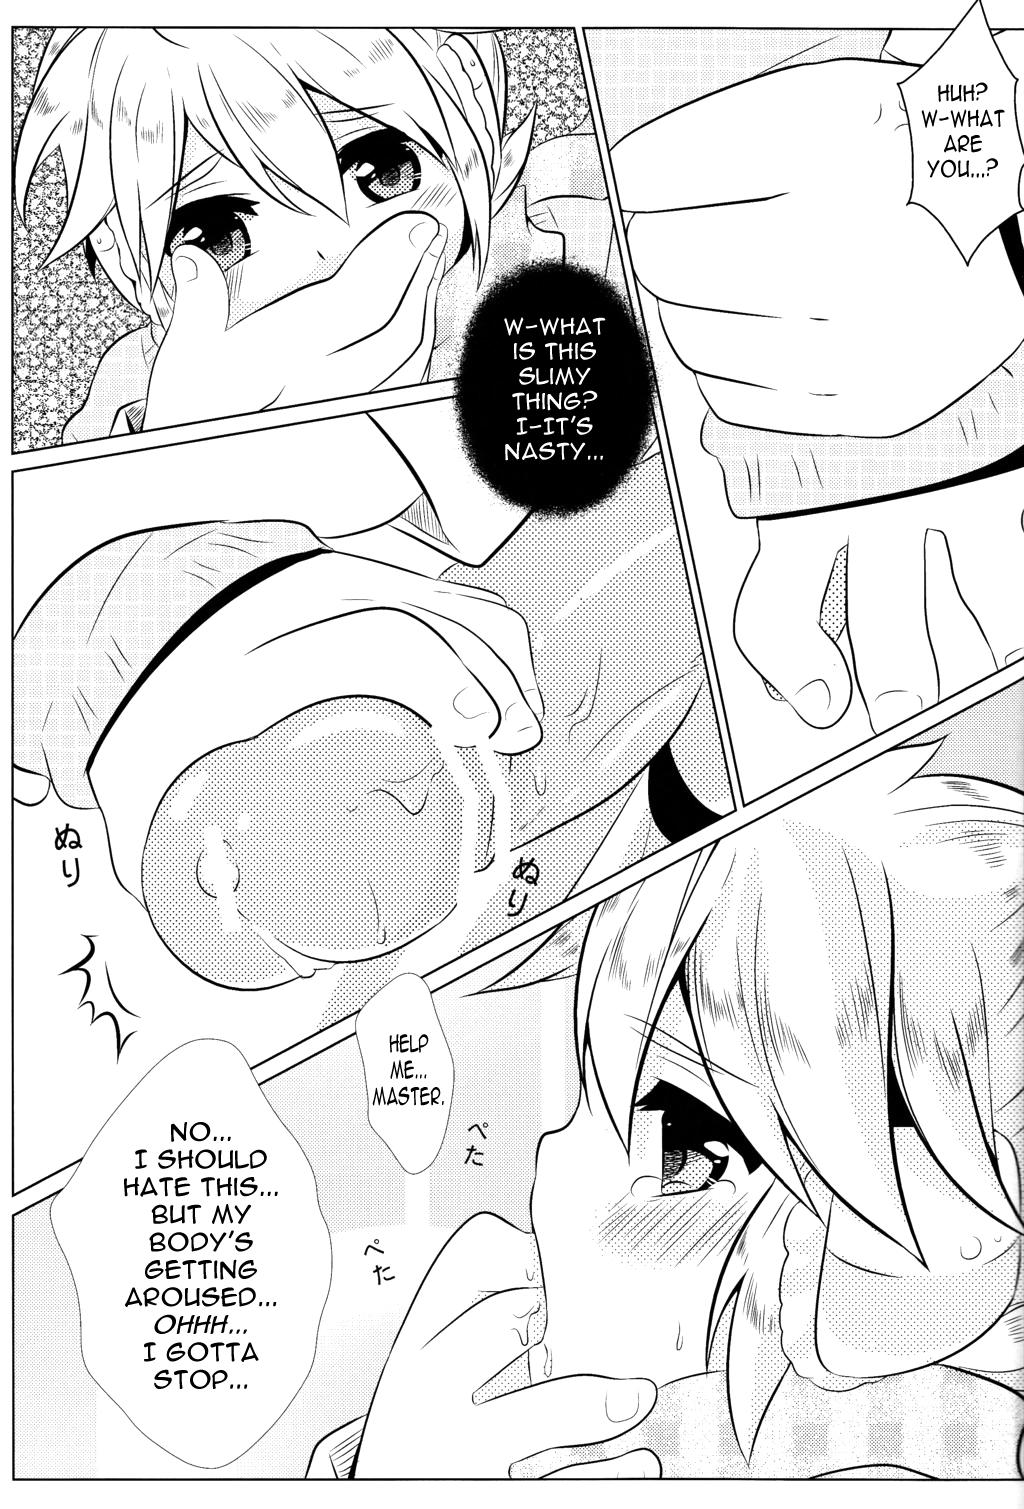 4some Boku no Master ga Konnani OO na Wake ga Nai - Vocaloid Cameltoe - Page 7